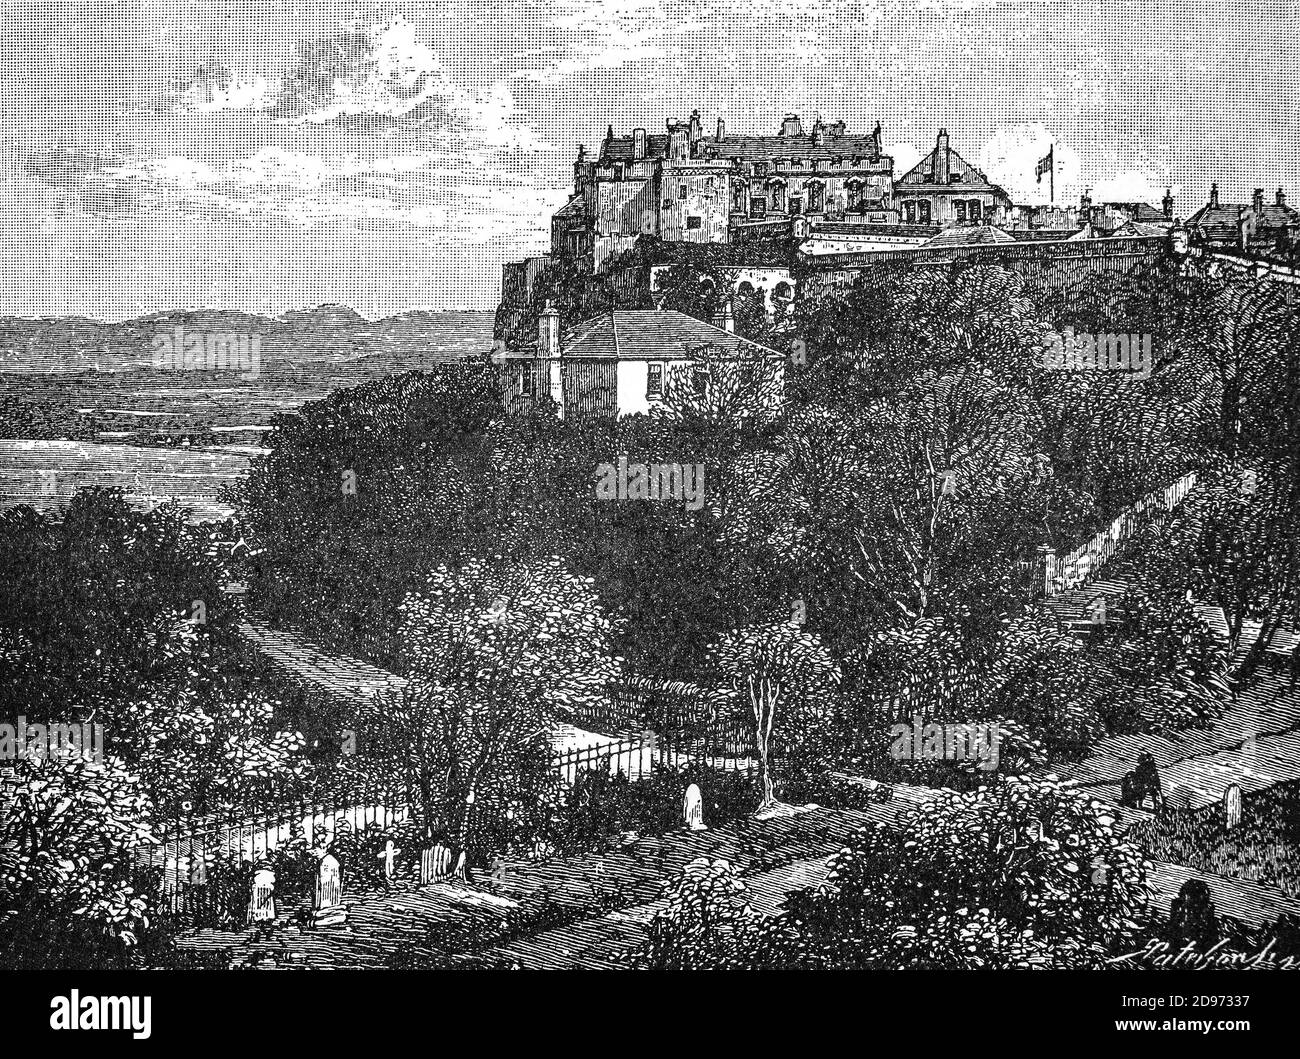 Ein Blick auf die Burg Stirling aus dem späten 19. Jahrhundert, von denen die meisten aus dem 15. Und 16. Jahrhundert stammen. Vor der Vereinigung mit England war Stirling Castle eine der meistgenutzten schottischen Königsresidenzen, ein Palast sowie eine Festung. Mehrere schottische Könige und Königinnen wurden in Stirling gekrönt, darunter Mary, Königin der Schotten, in 1542. Es gab viele Belagerungen, zuletzt 1746, als Bonnie Prince Charlie erfolglos versuchte, das Schloss zu übernehmen. Stockfoto